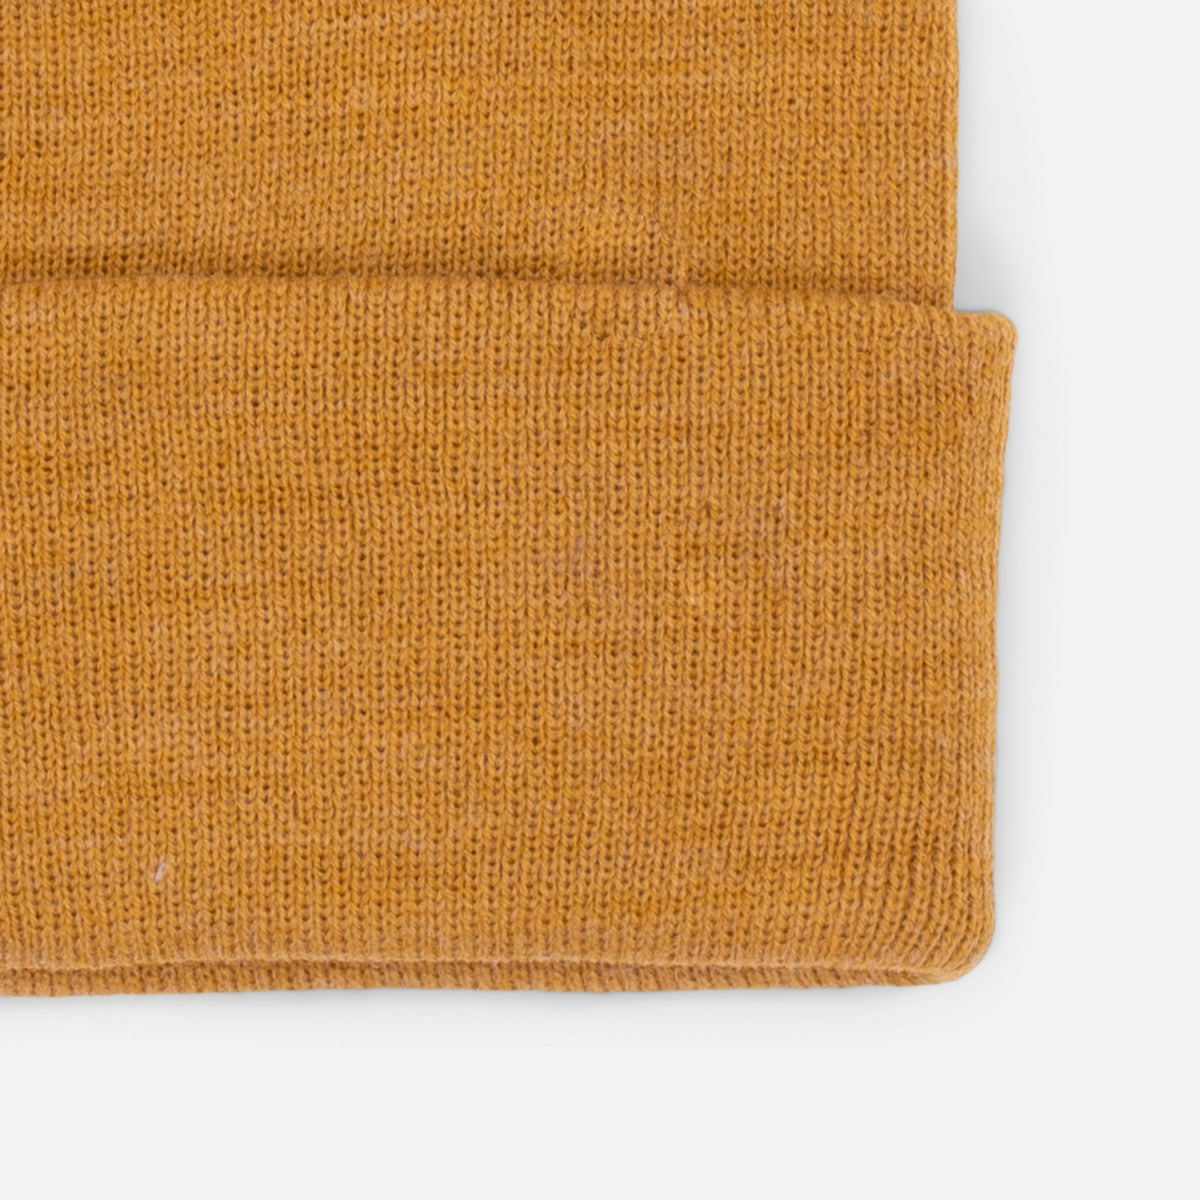 Tuque tricot ocre avec rabat - ethik